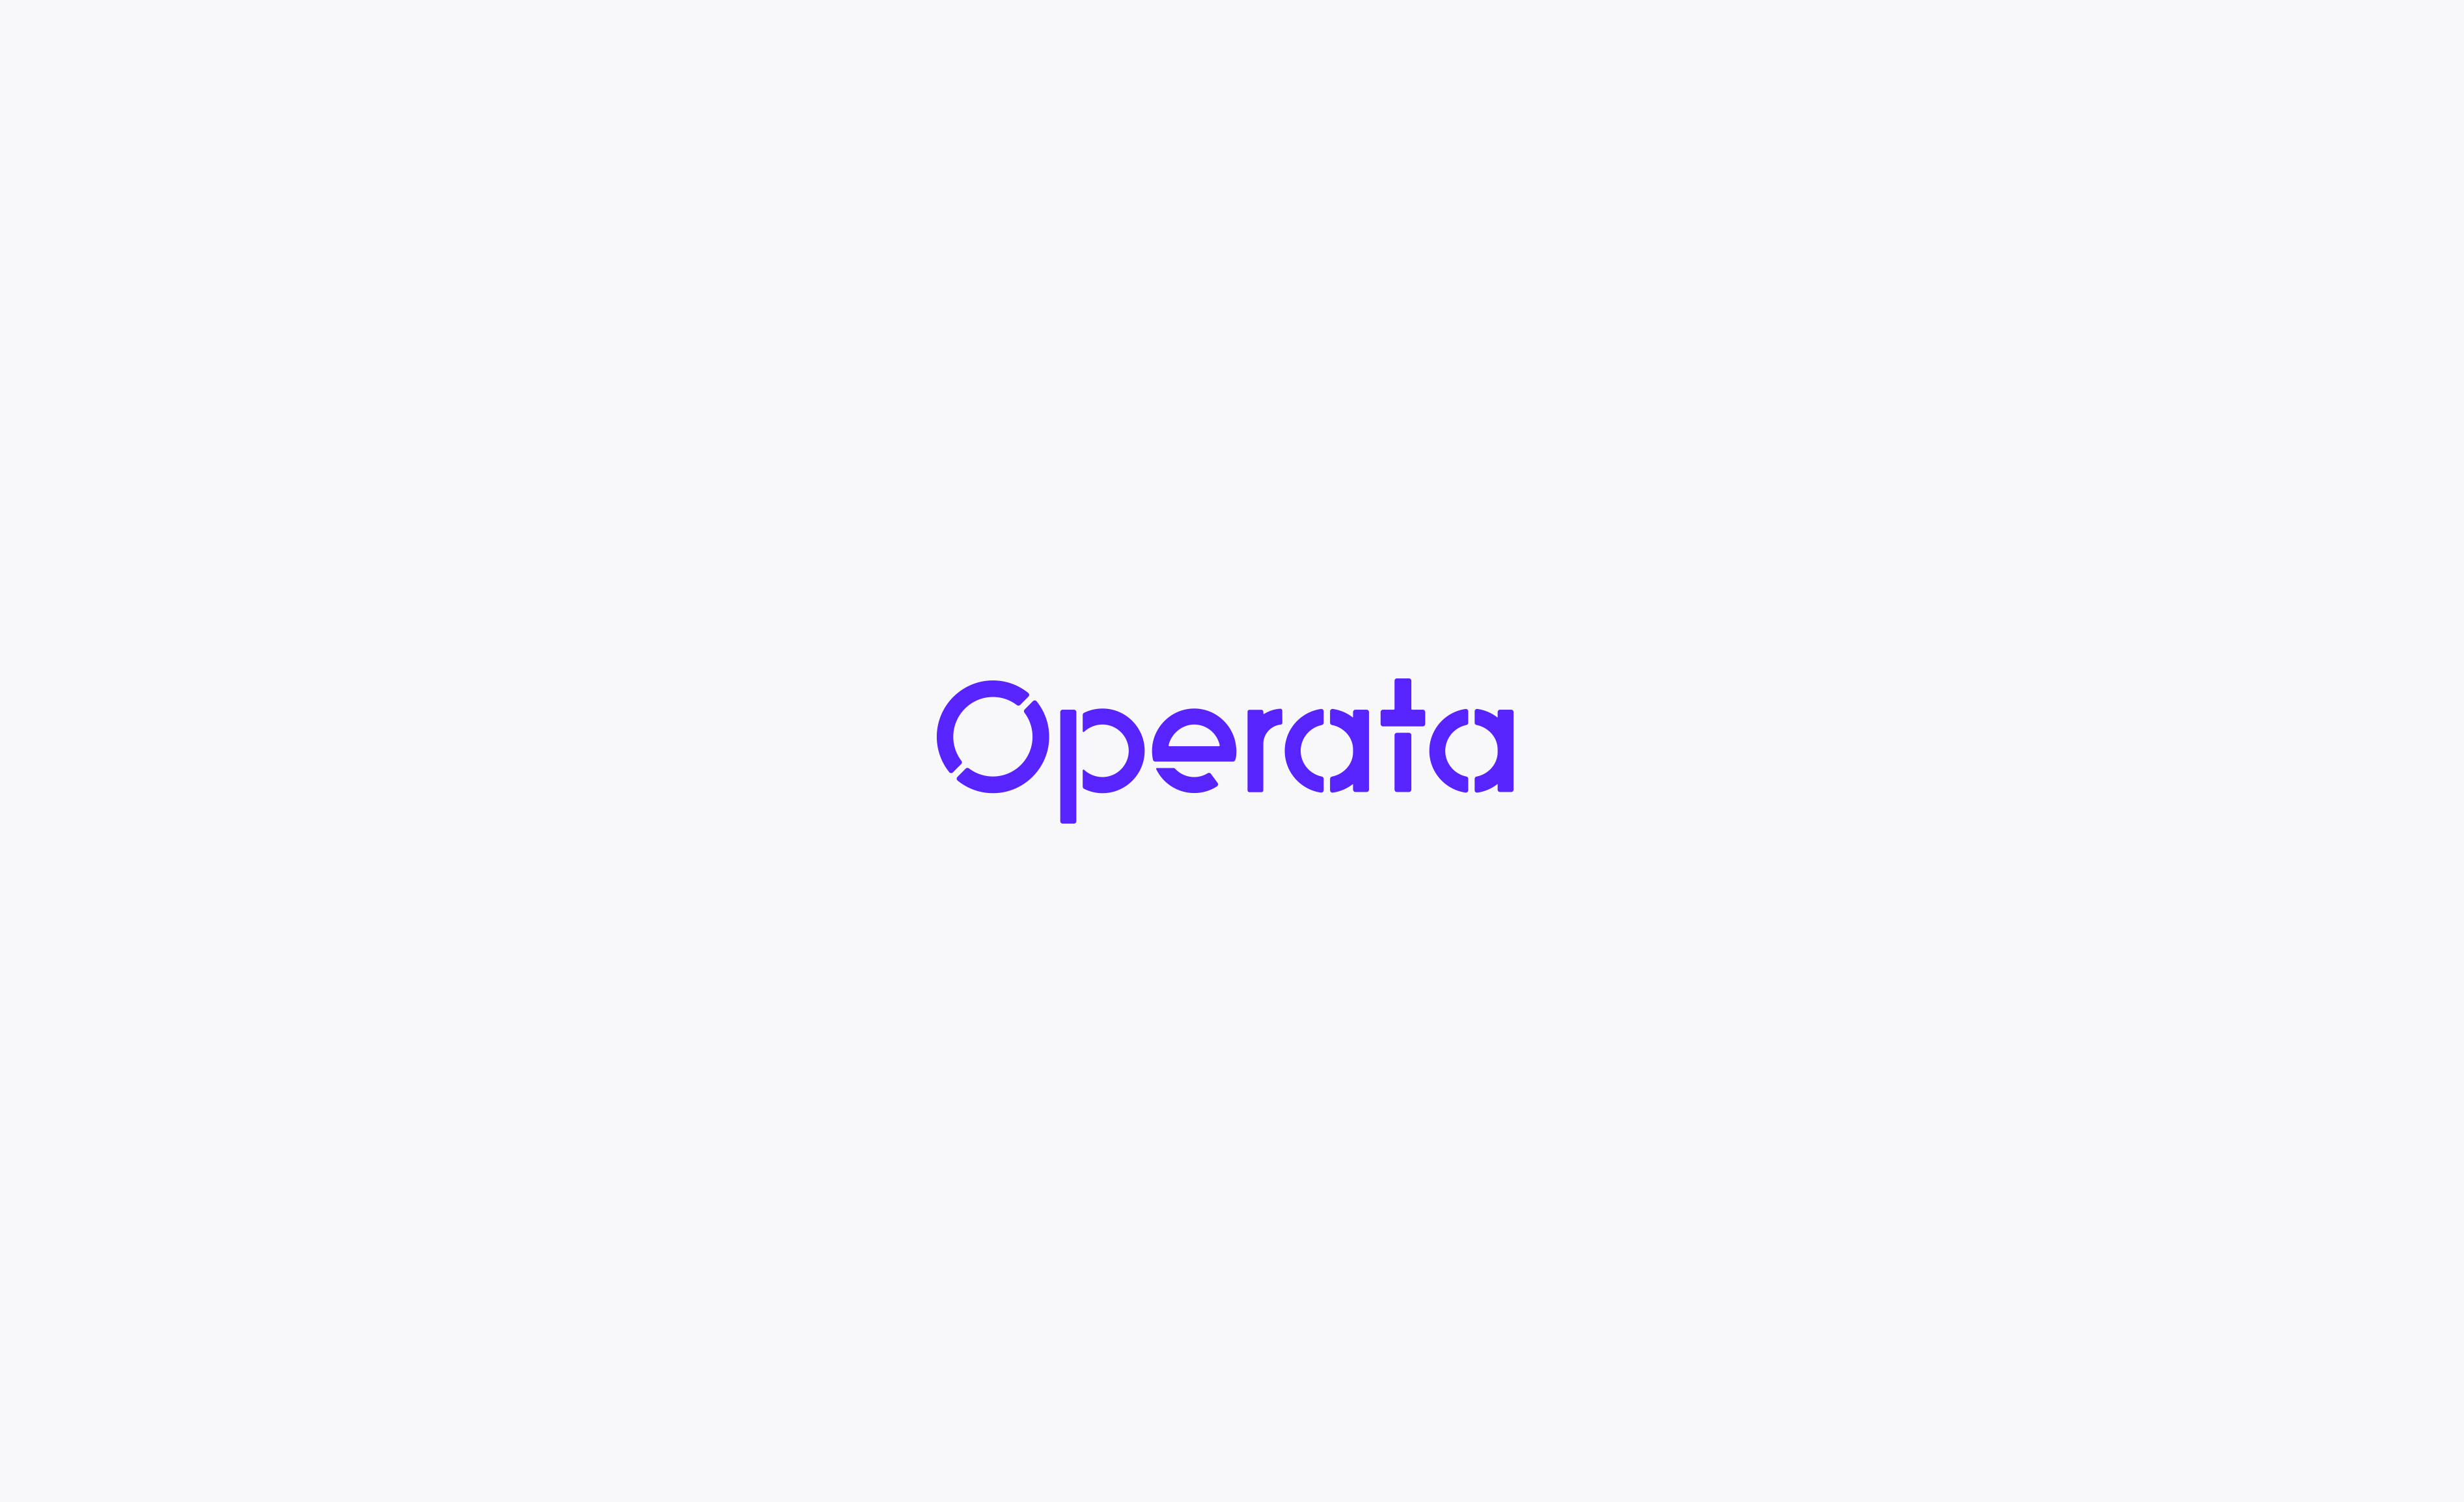 Operata wordmark logo